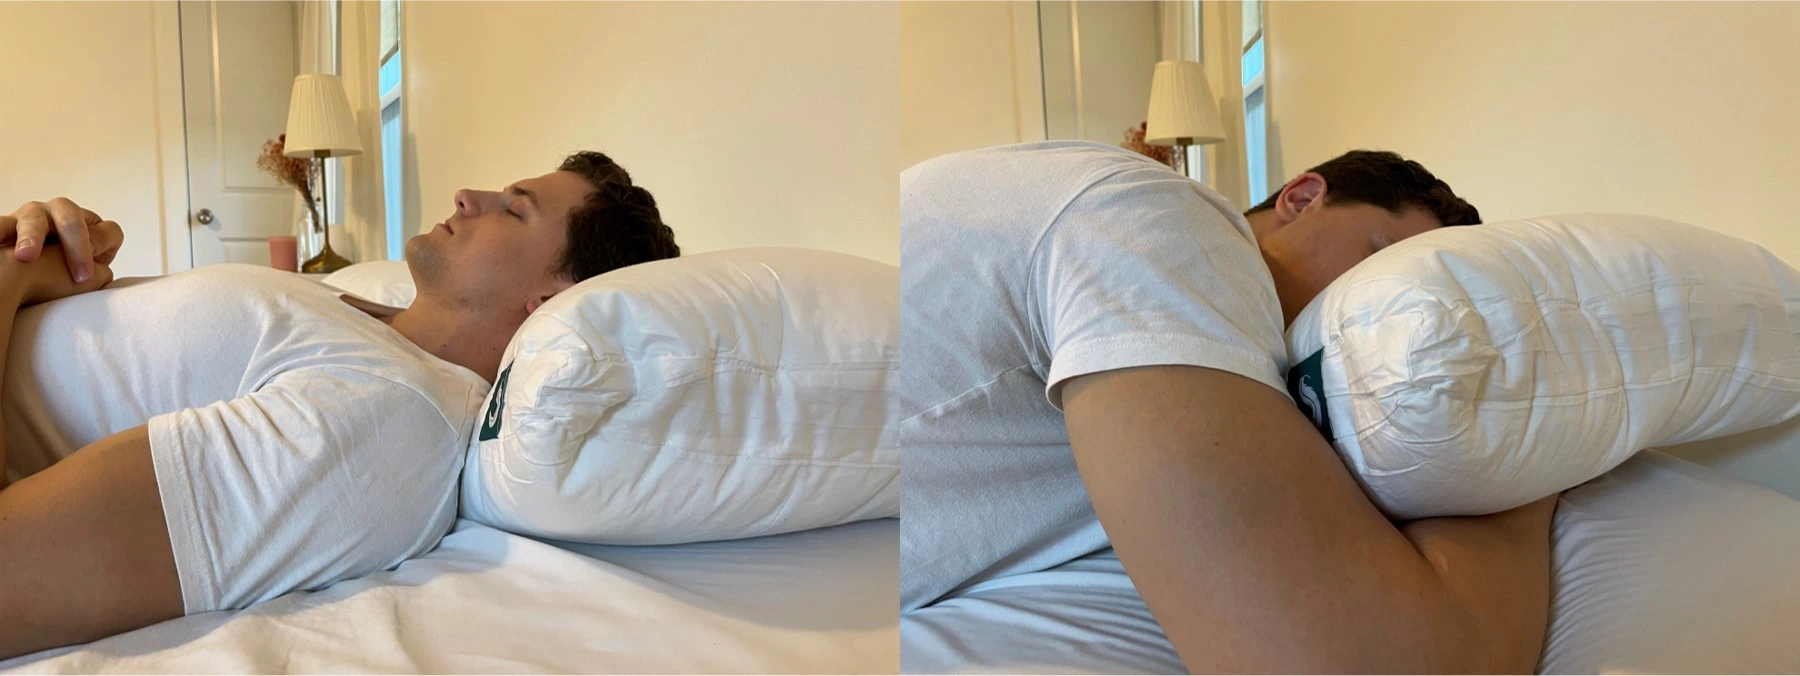 https://pillowspecialist.com/img/sleepgram-pillow-sleeping.webp